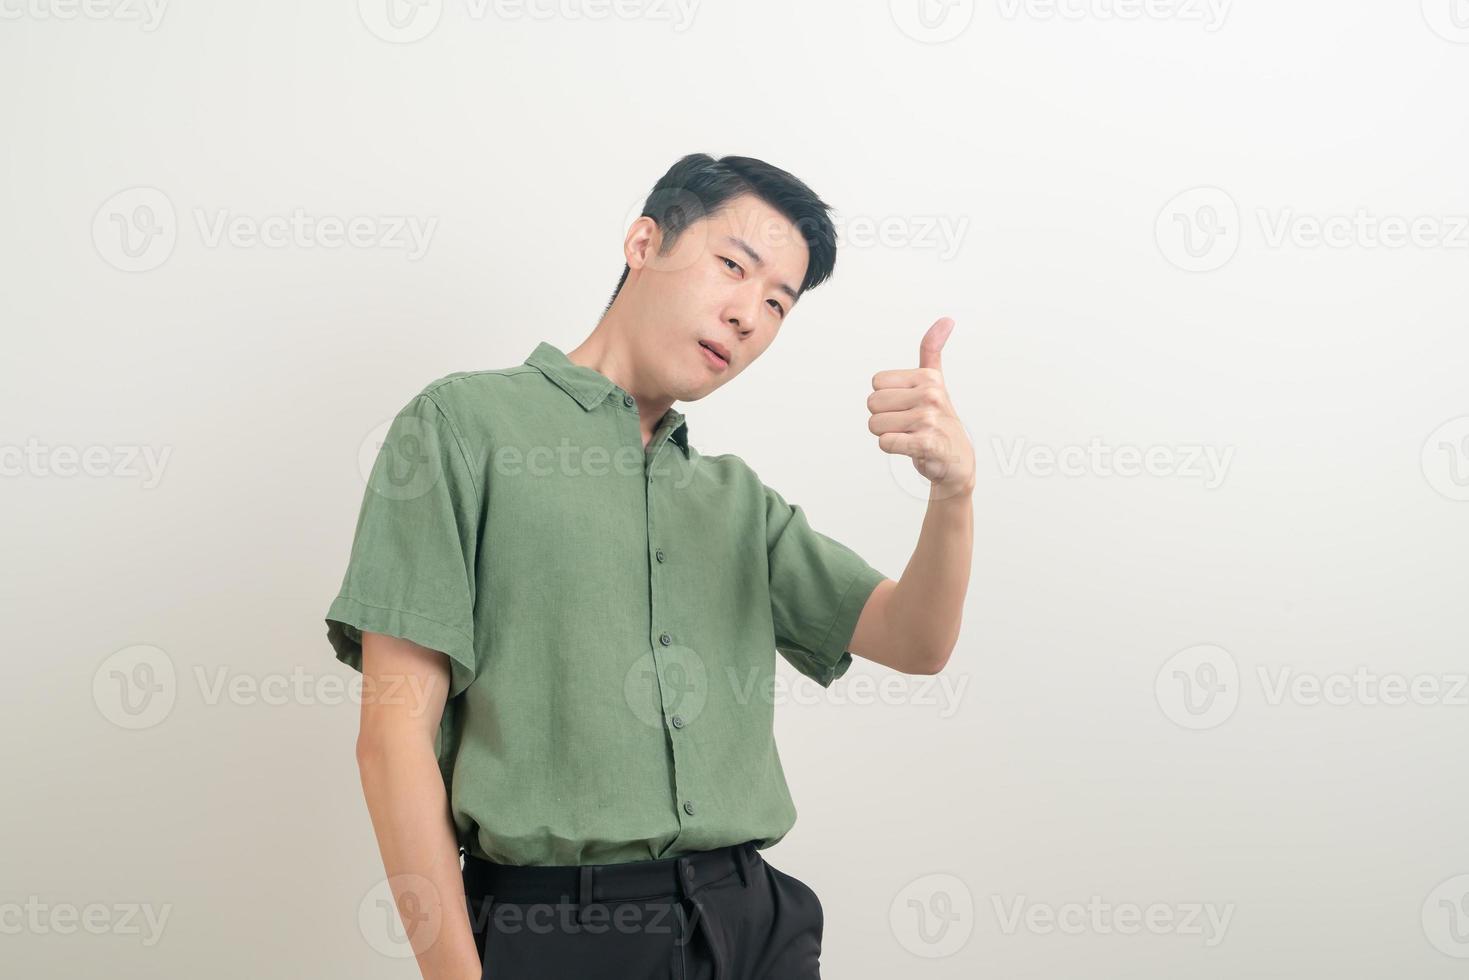 giovane uomo asiatico pollice in alto o segno ok con la mano foto